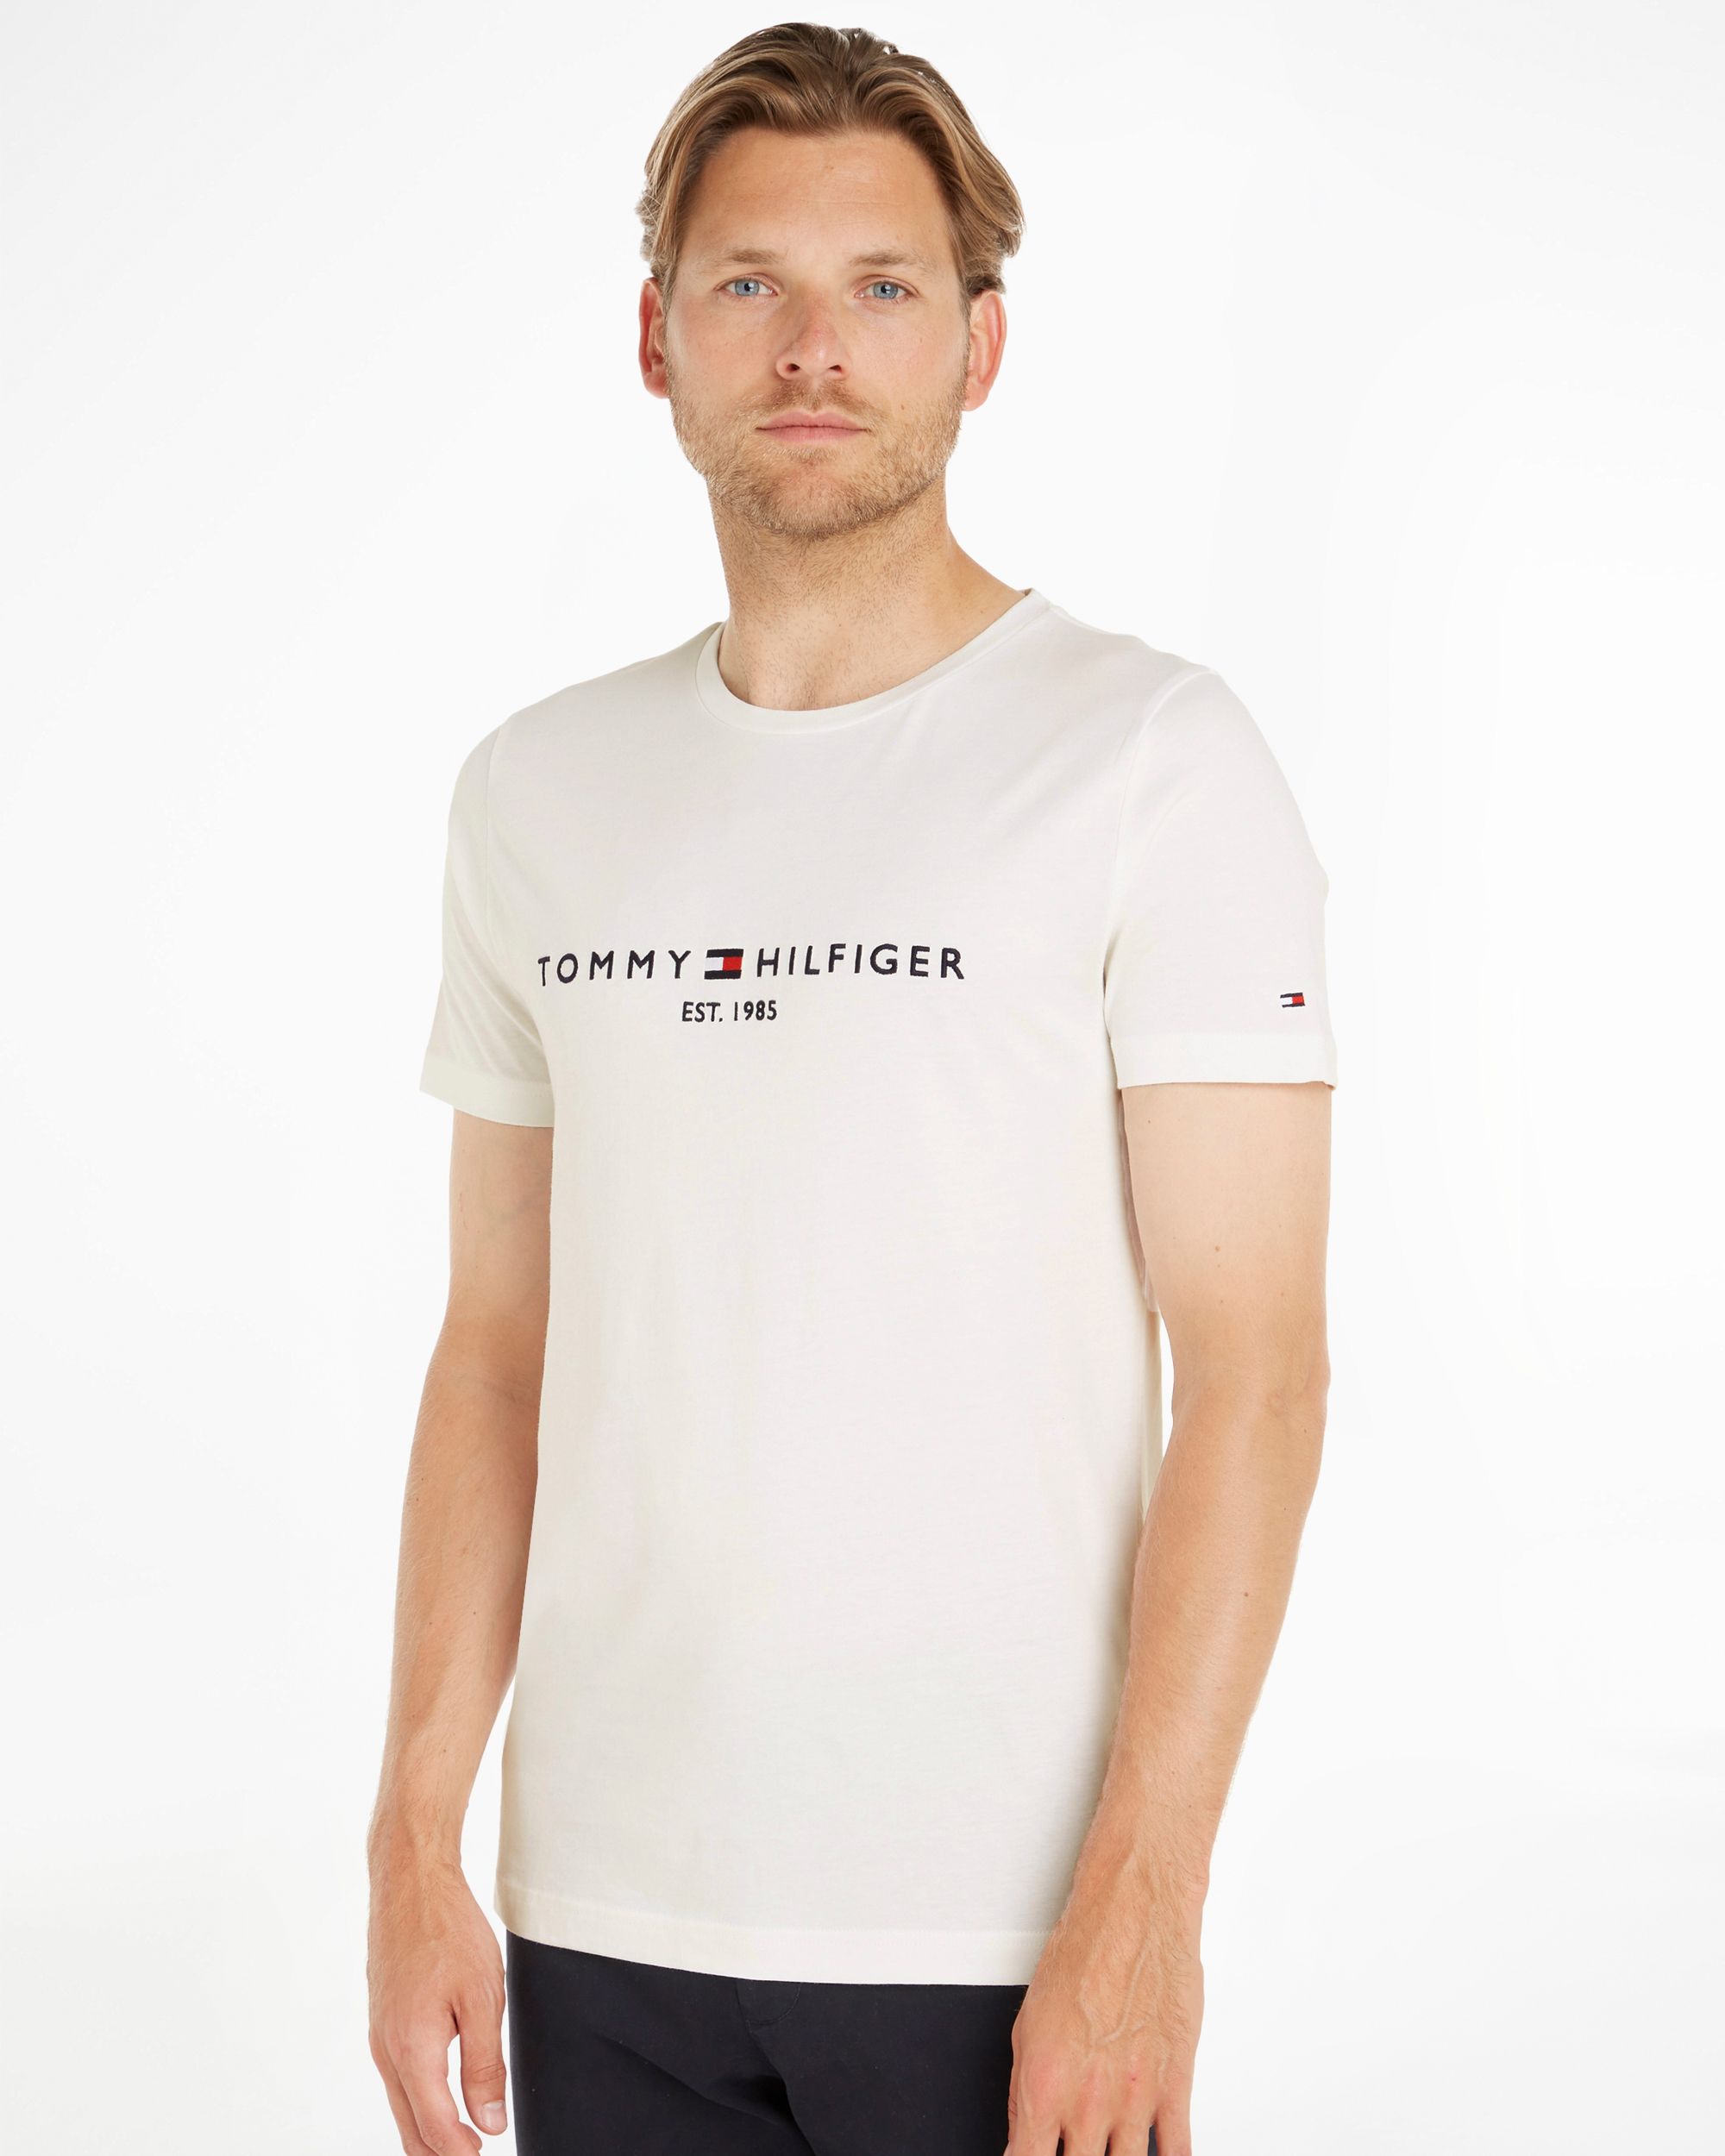 Tommy Hilfiger Menswear T-shirt KM Wit 086990-001-L